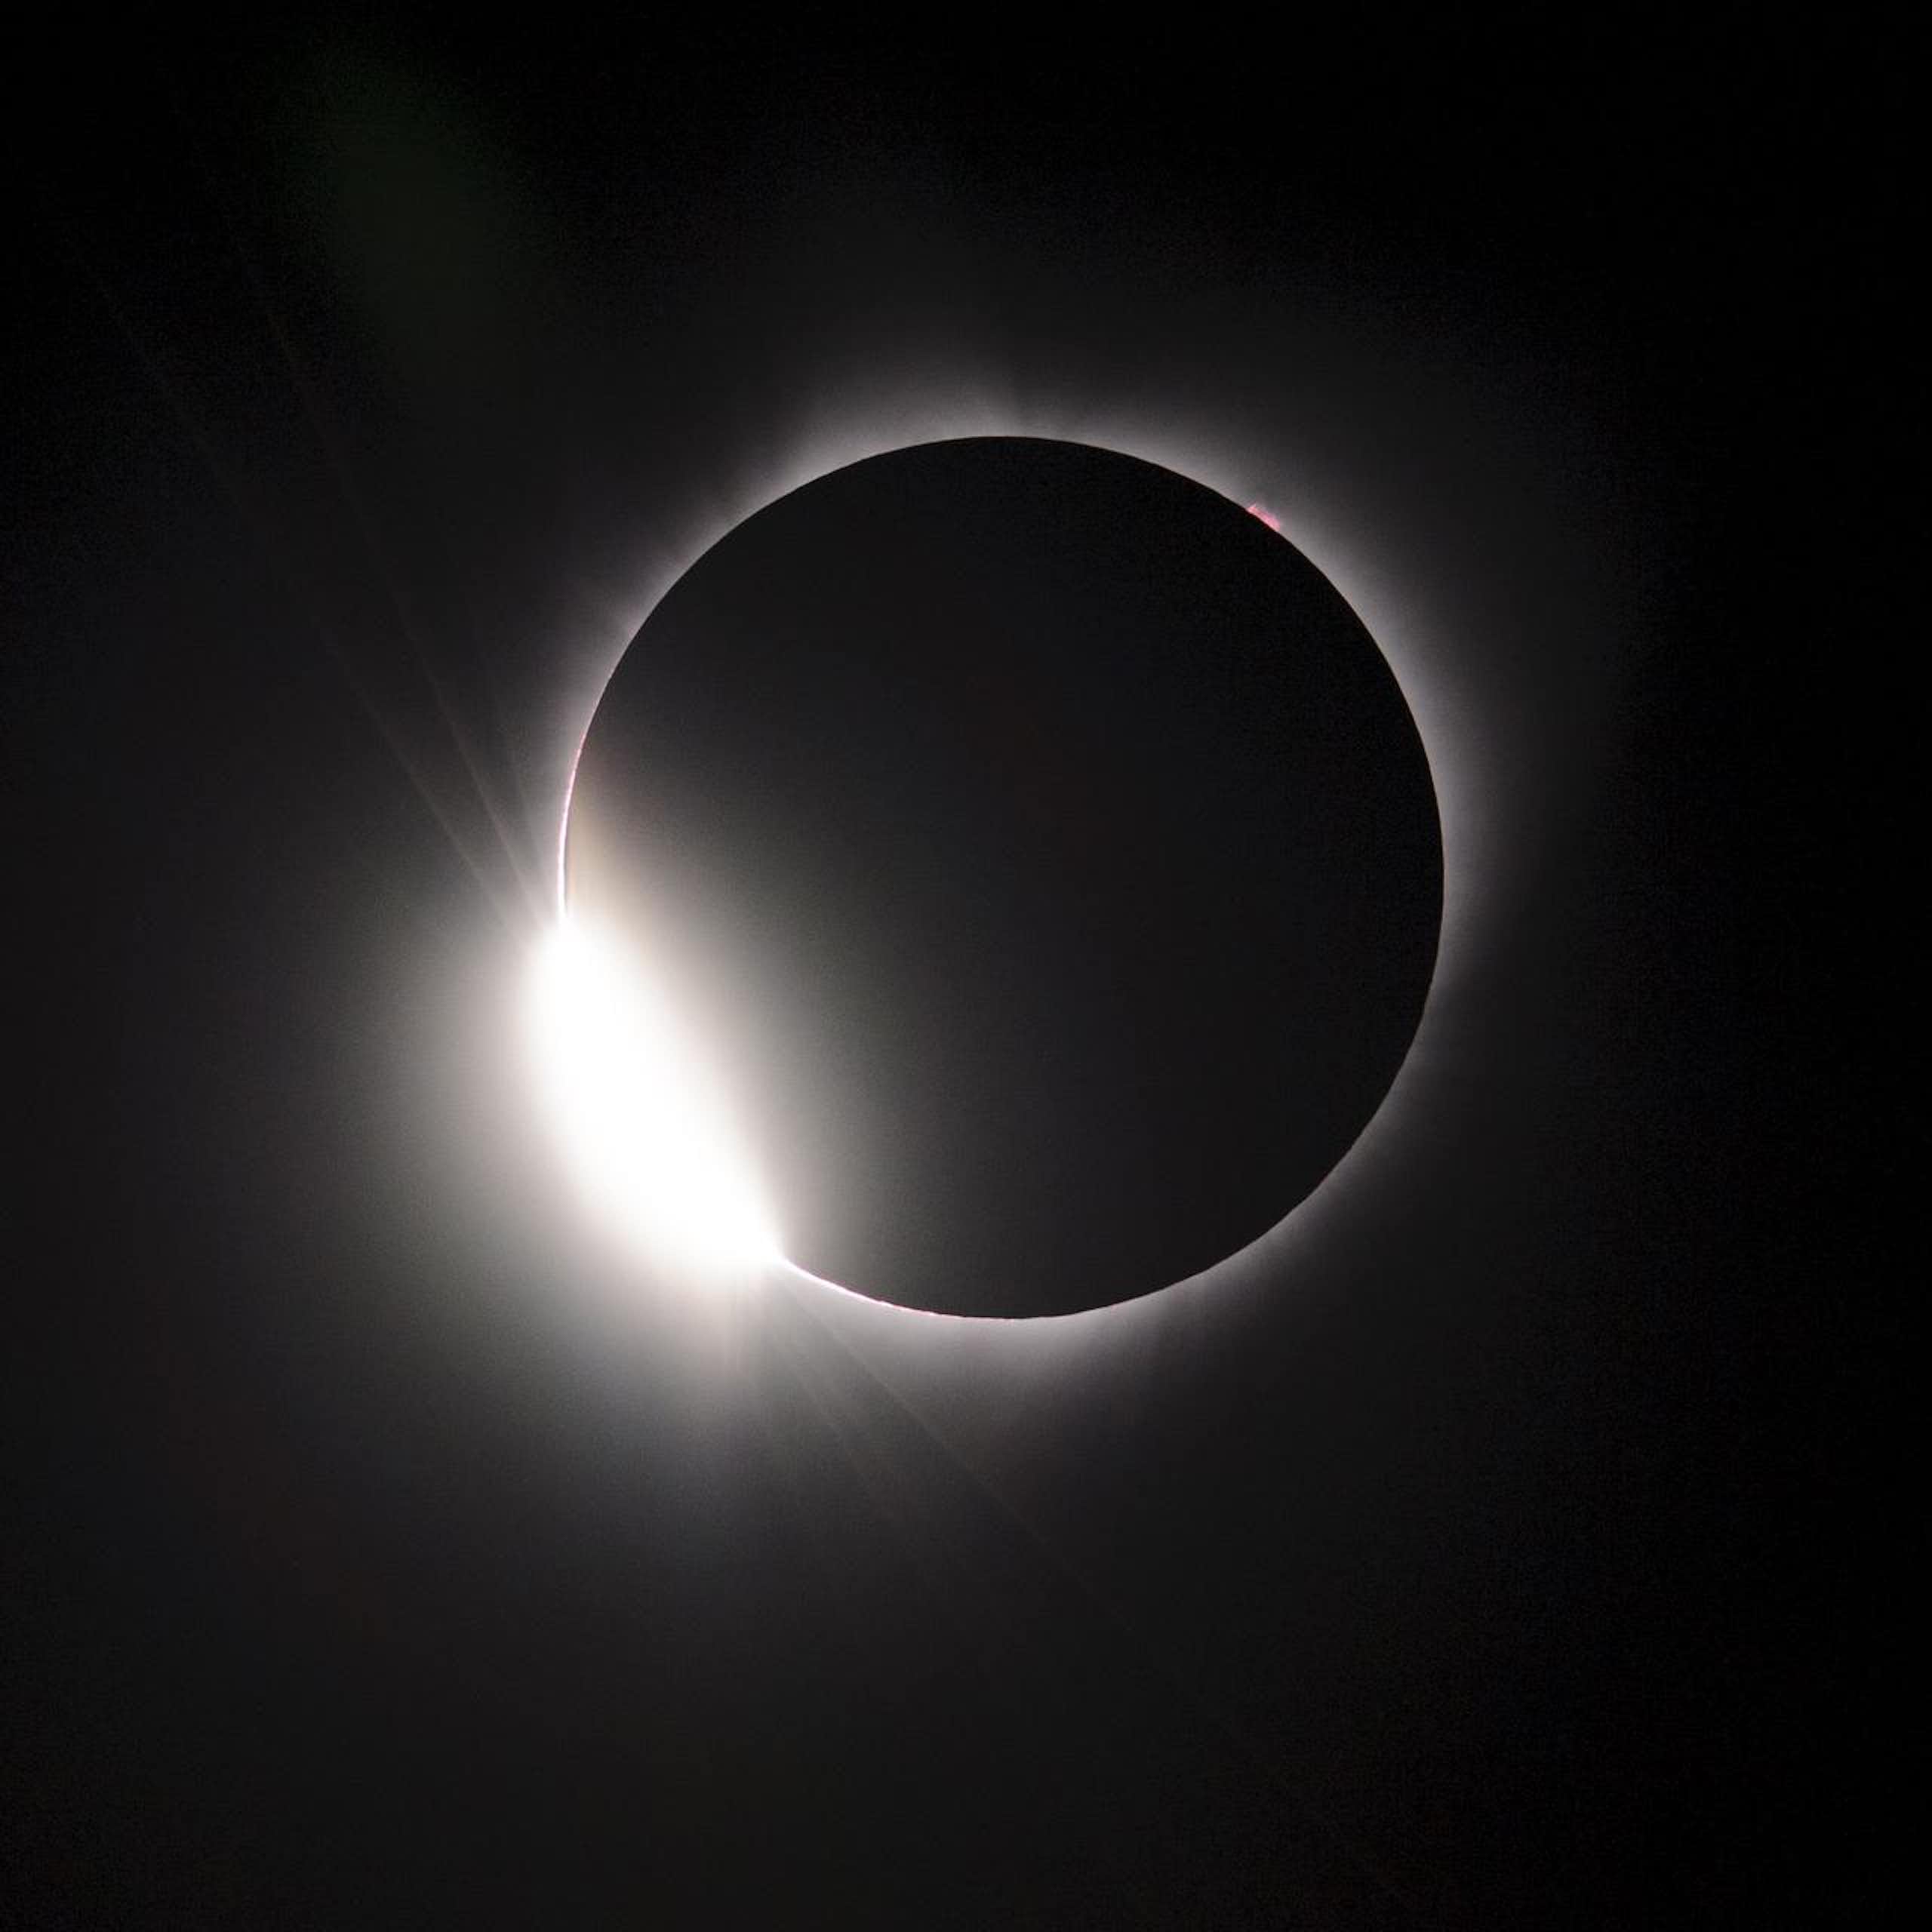 un cercle noir entouré d'un halo lumineux blanc sur fond sombre